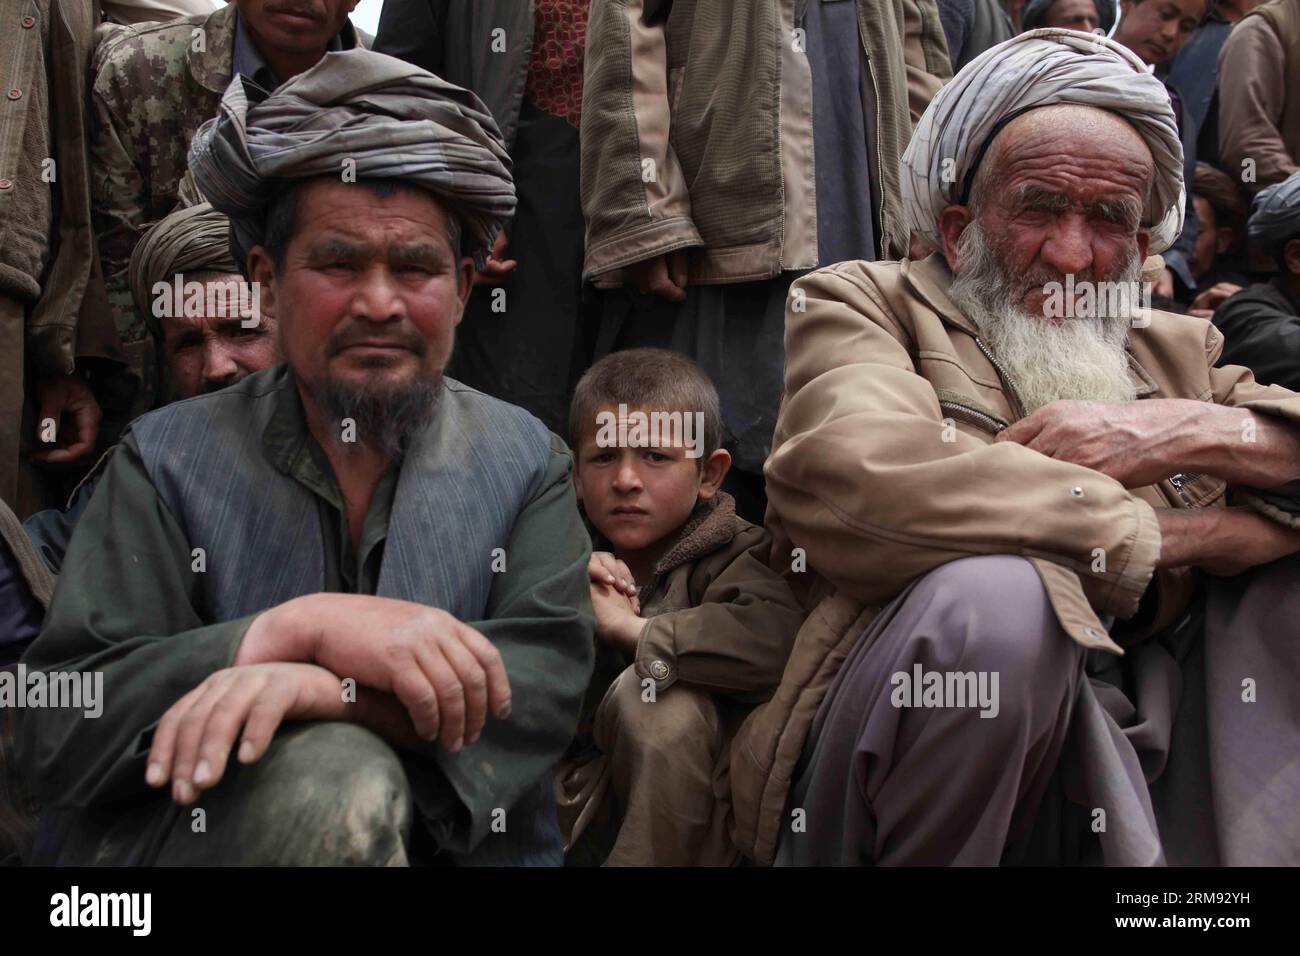 (140505) -- BADAKHSHAN, 4. Mai 2014 (Xinhua) -- Afghanen warten auf Hilfsgüter nach einer Landseite in der Provinz Badakhshan, Nordafghanistan, 4. Mai 2014. Der tödliche Erdrutsch ereignete sich am Freitag in der bergigen Provinz Badakhshan. Obwohl es keine offizielle Zahl von Todesopfern gibt, sagte Provinzgouverneur Shah Waliullah Adeeb Xinhua, dass mehr als 2.500 Menschen ihr Leben verloren haben könnten. (Xinhua/Ahmad Massoud) AFGHANISTAN-BADAKHSHAN-ERDRUTSCH PUBLICATIONxNOTxINxCHN Badakhshan 4. Mai 2014 XINHUA Afghans Wait to receive Relief Food After A Landside in Badakhshan Province Northern Afghanistan M Stockfoto